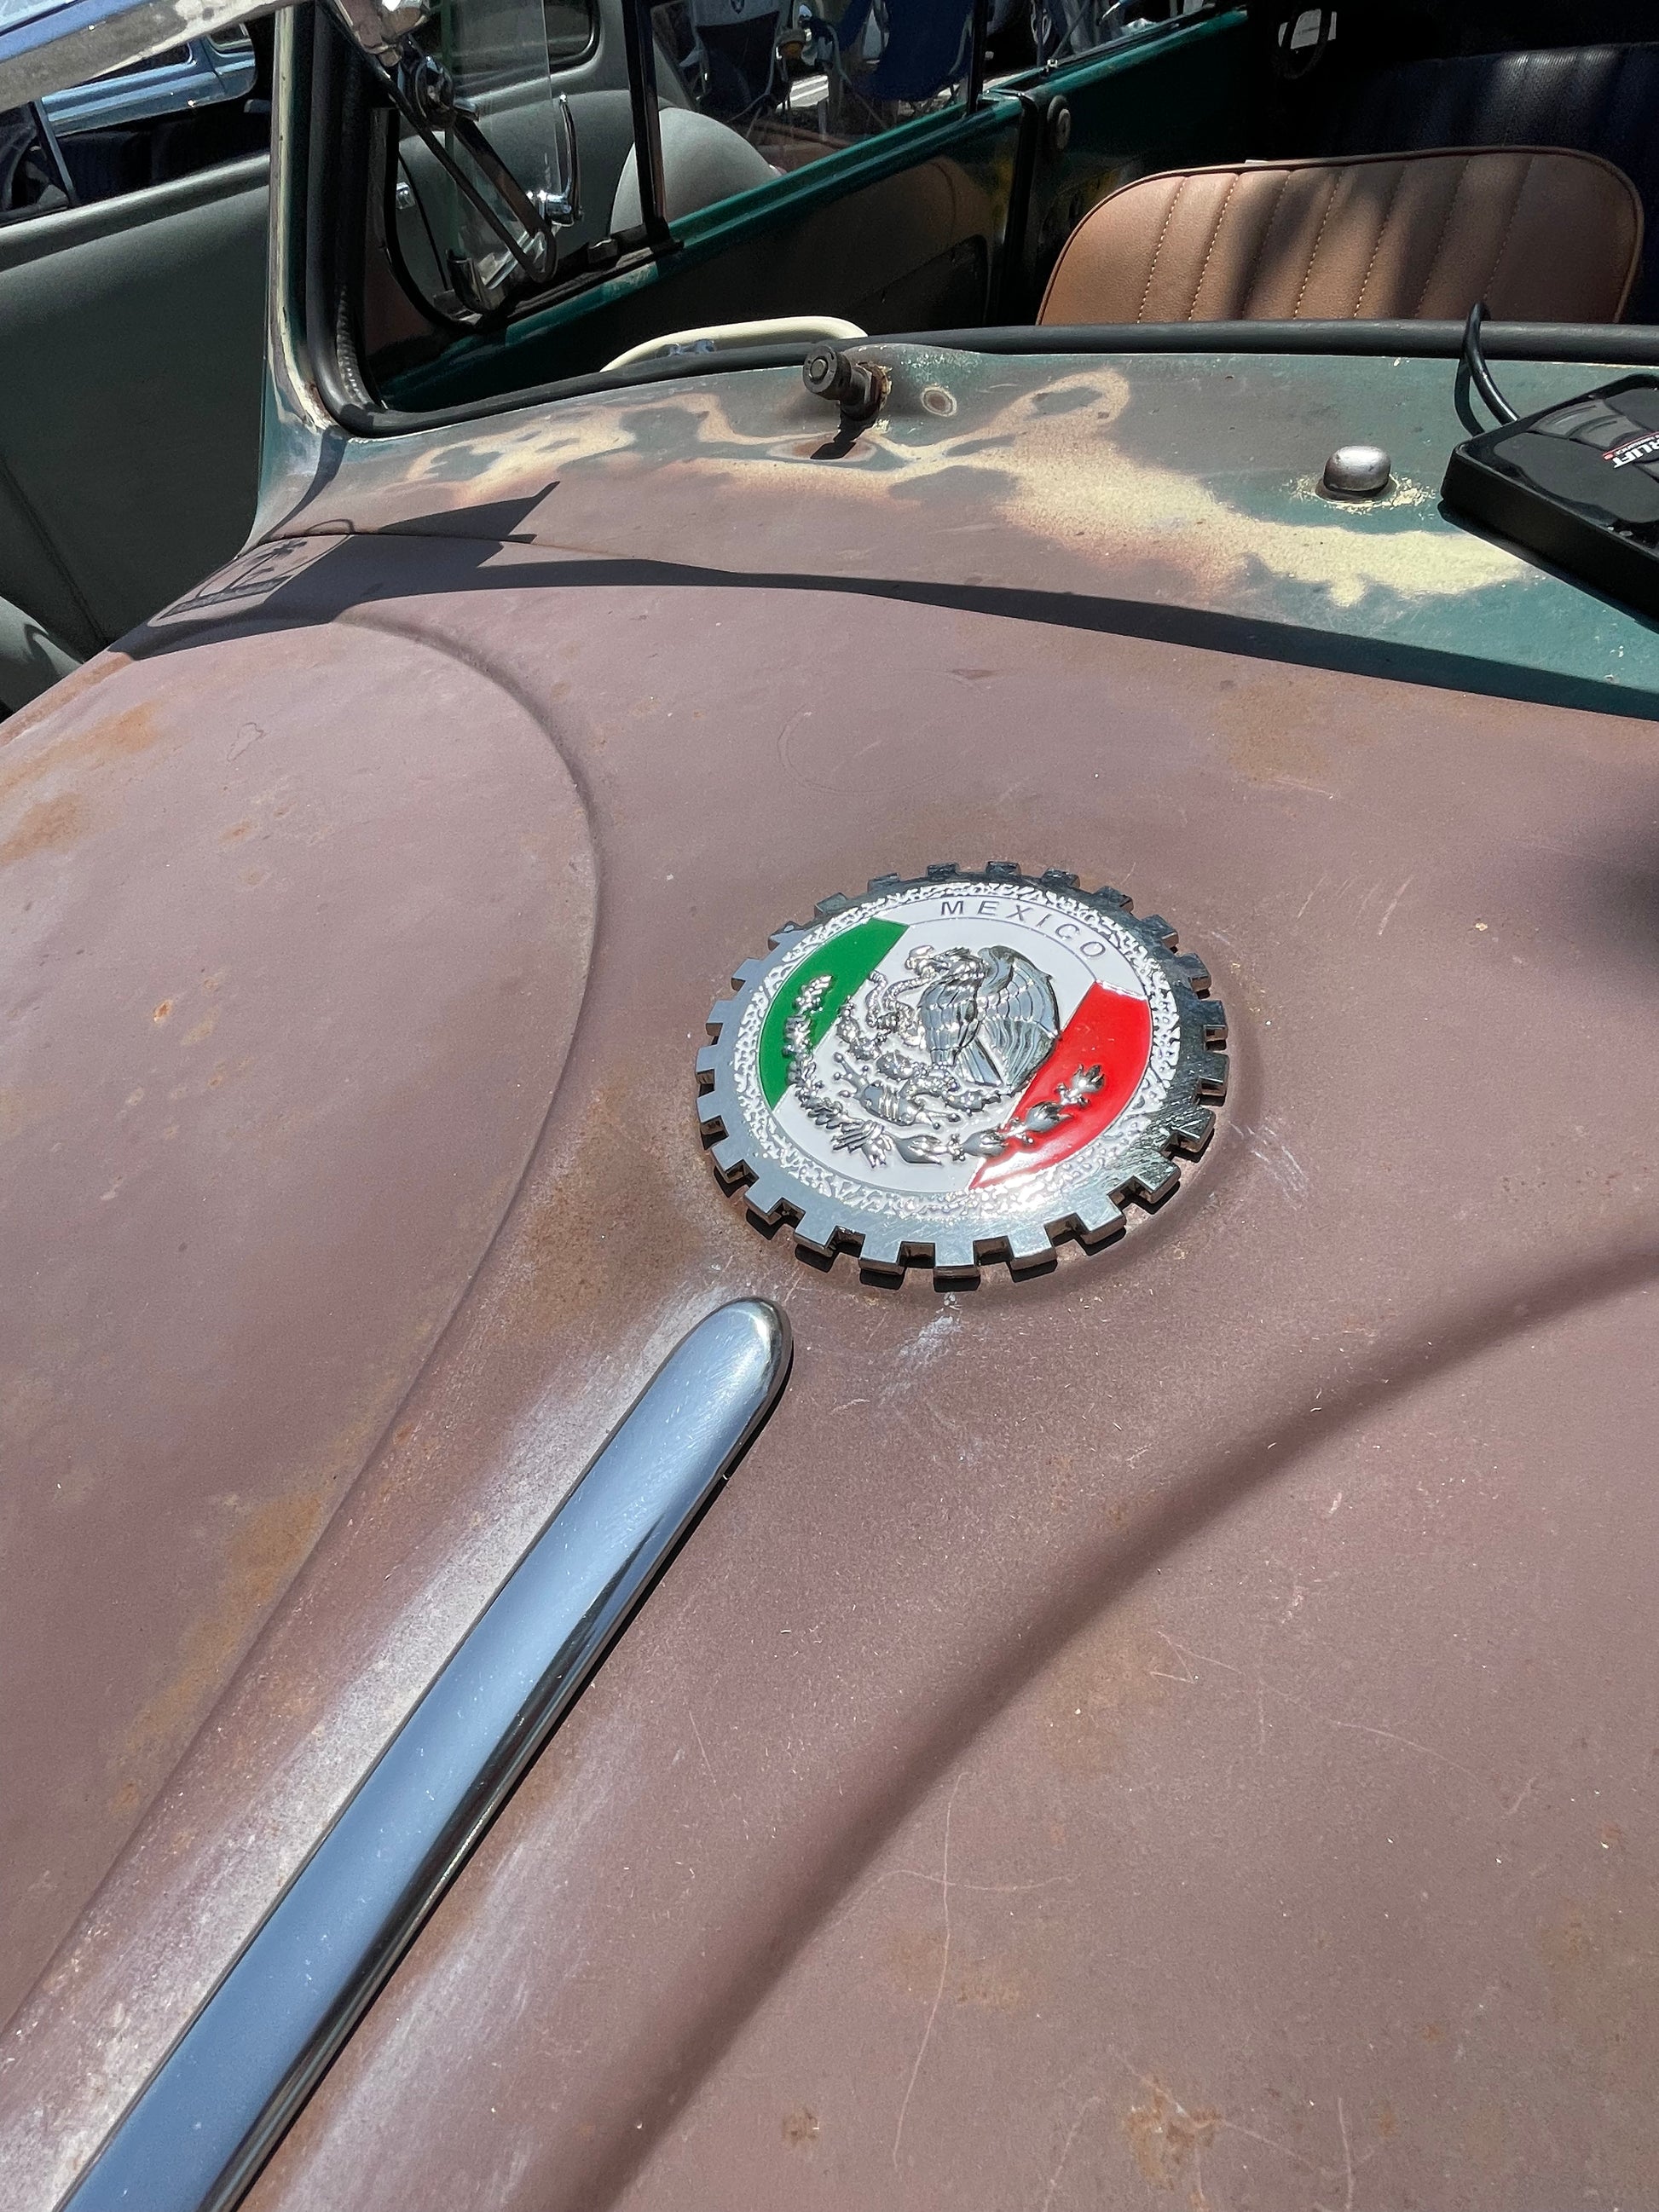 Mexico Flag Auto Emblem